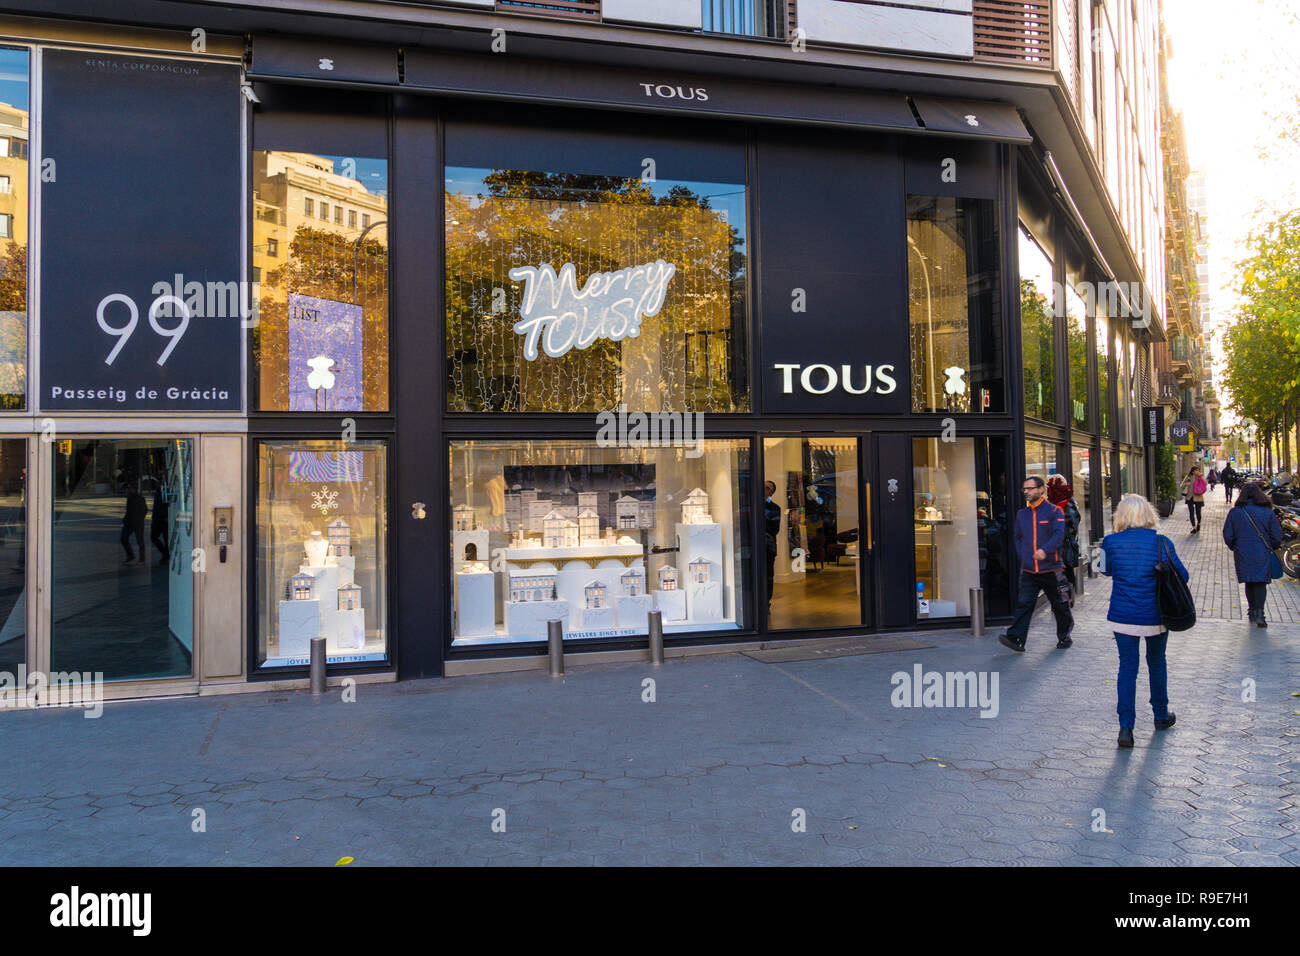 TOUS opens a flagship store in Artz Pedregal - TOUS News